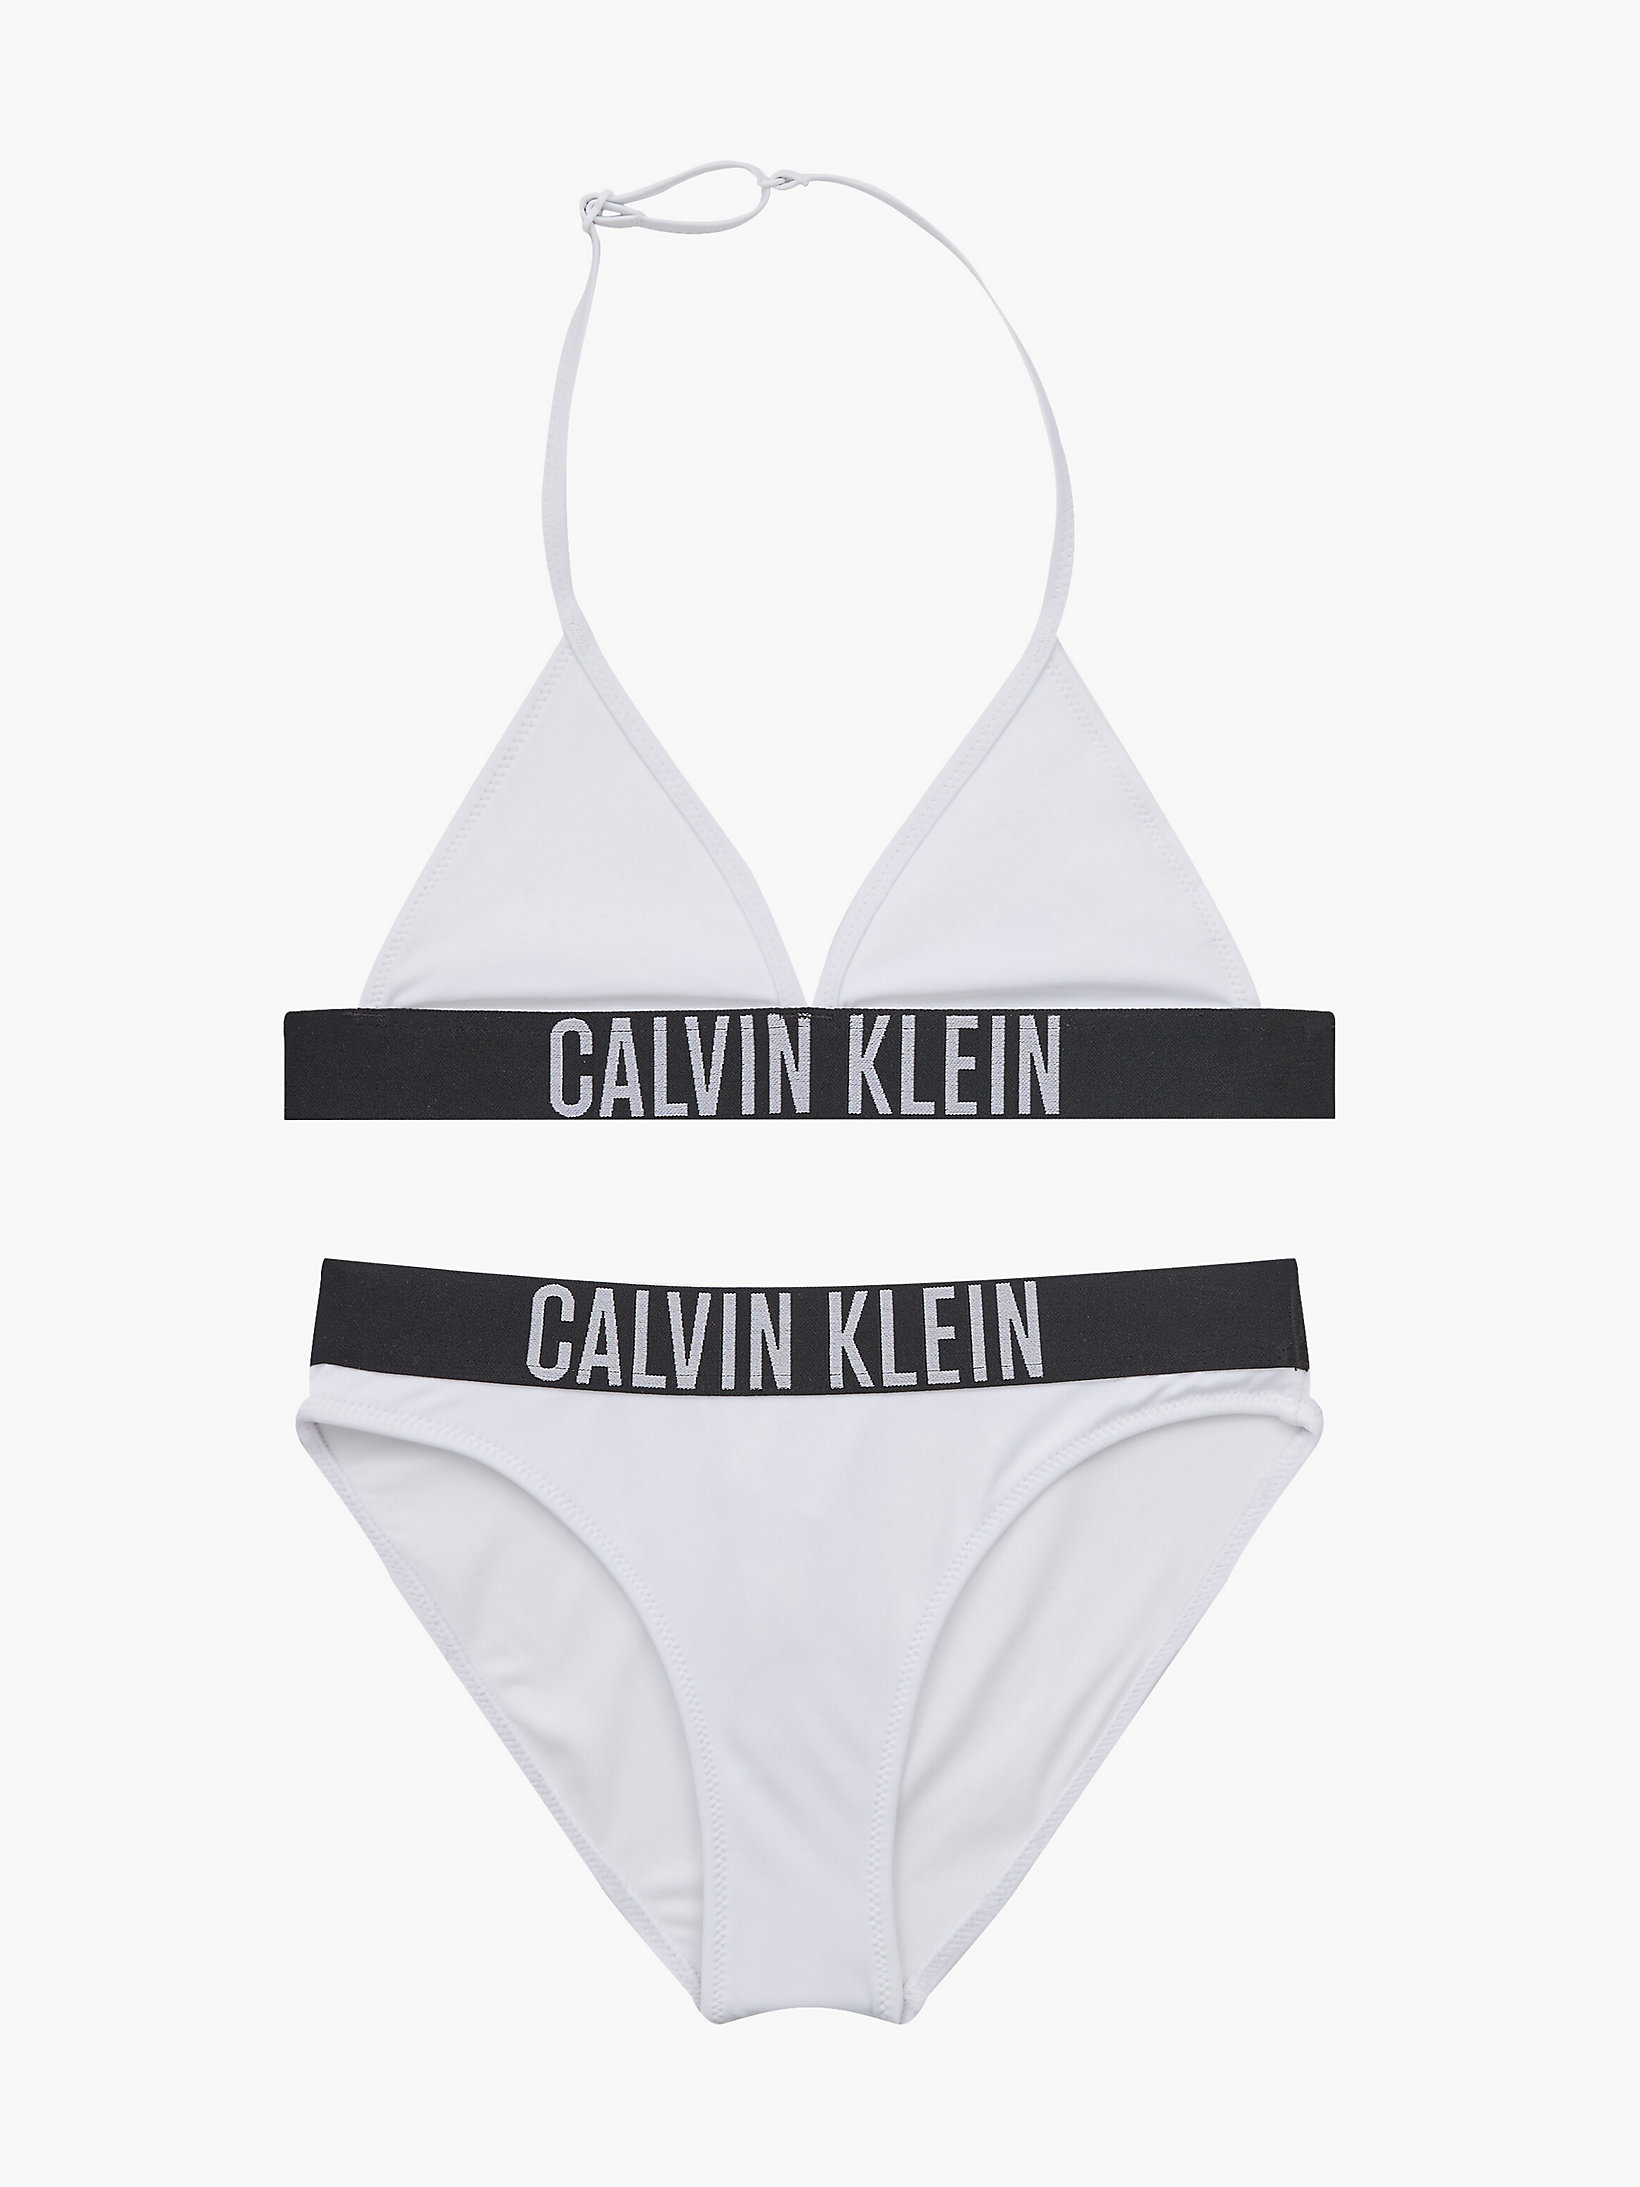 CK One Completo bikini a triangolo bambina Calvin Klein Bambina Sport & Swimwear Costumi da bagno Bikini Bikini a Triangolo 